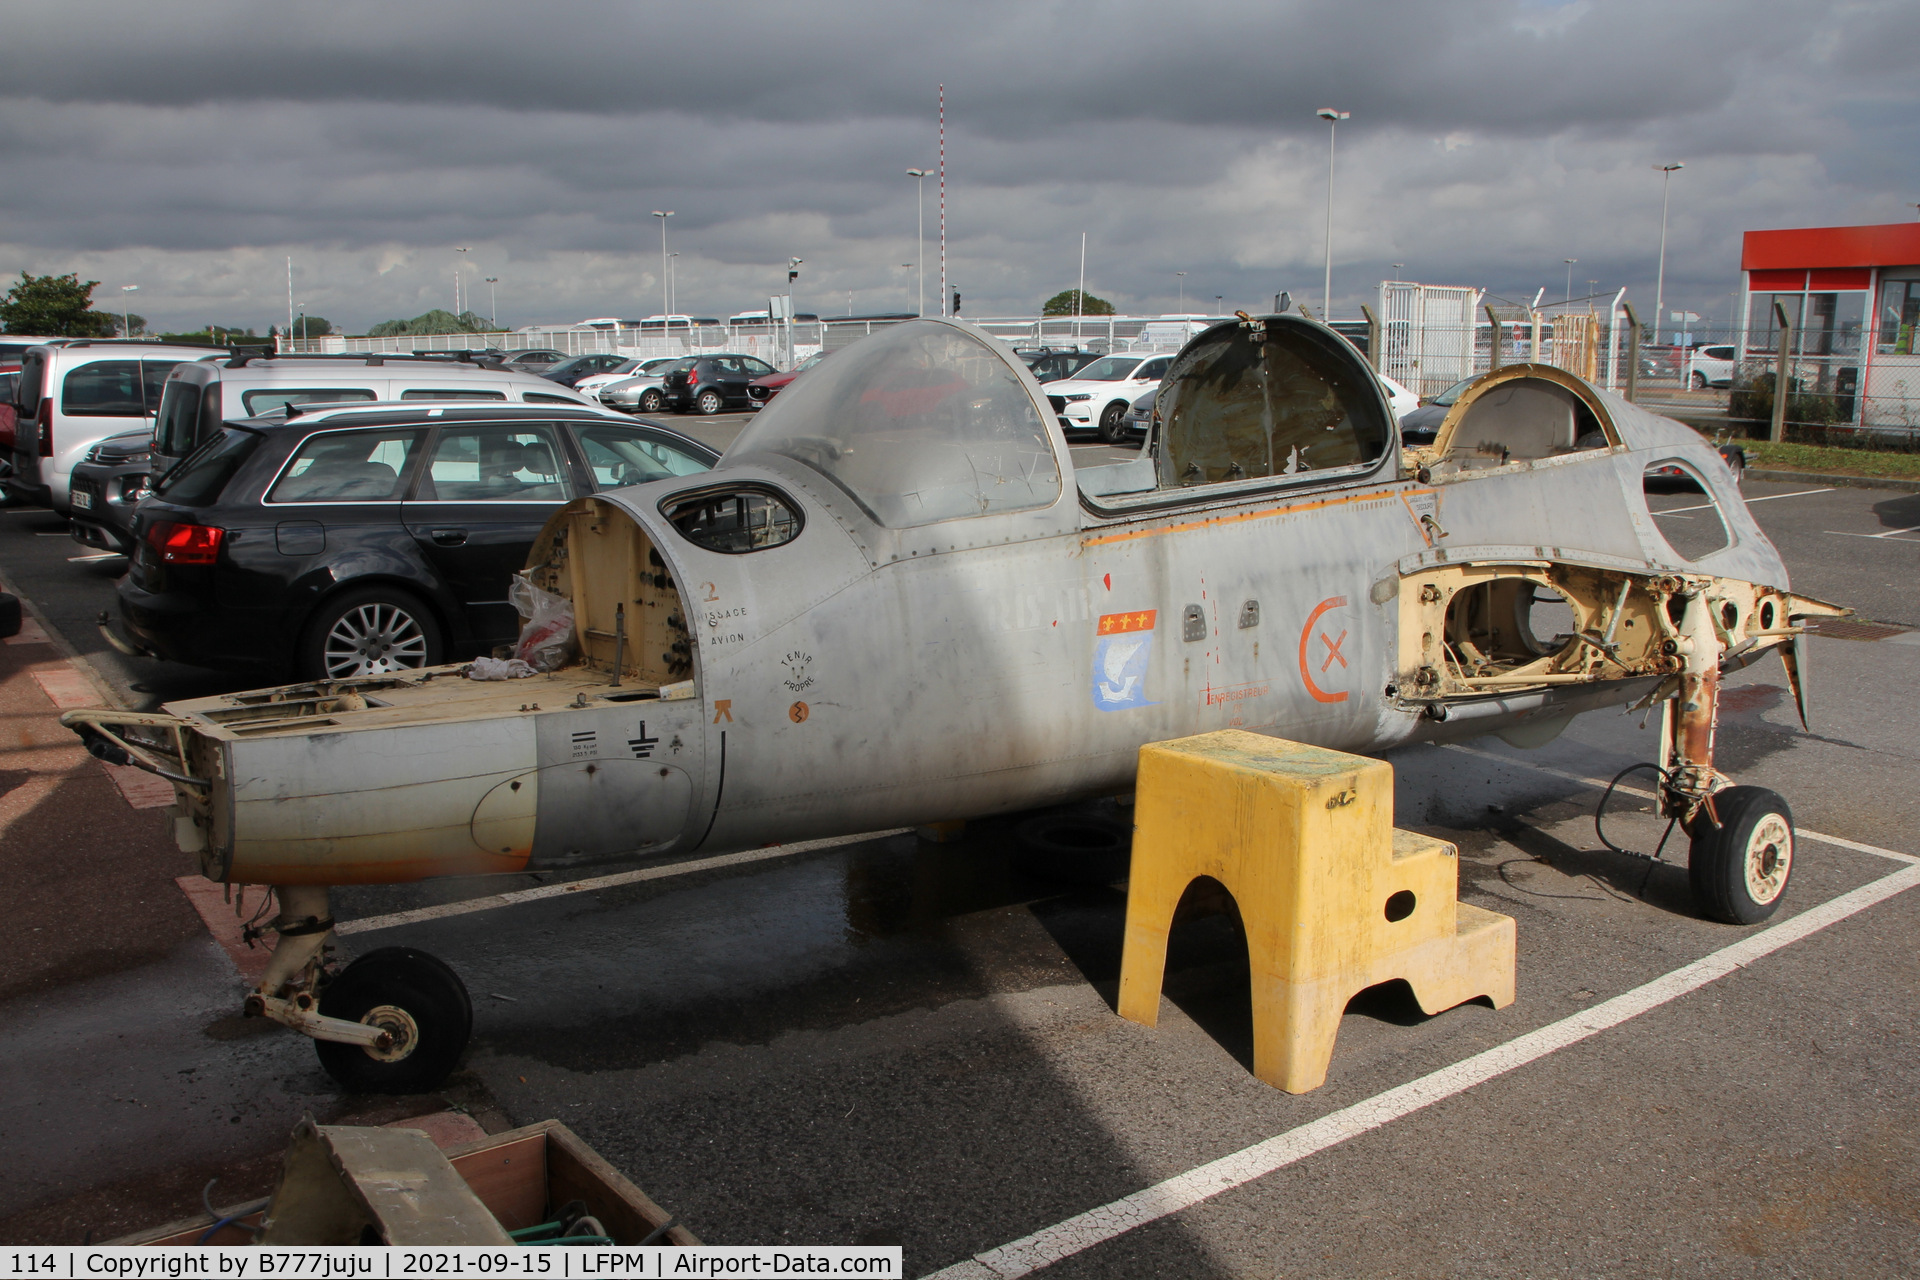 114, Morane-Saulnier MS.760 Paris C/N 114, at SAFRAN Museum